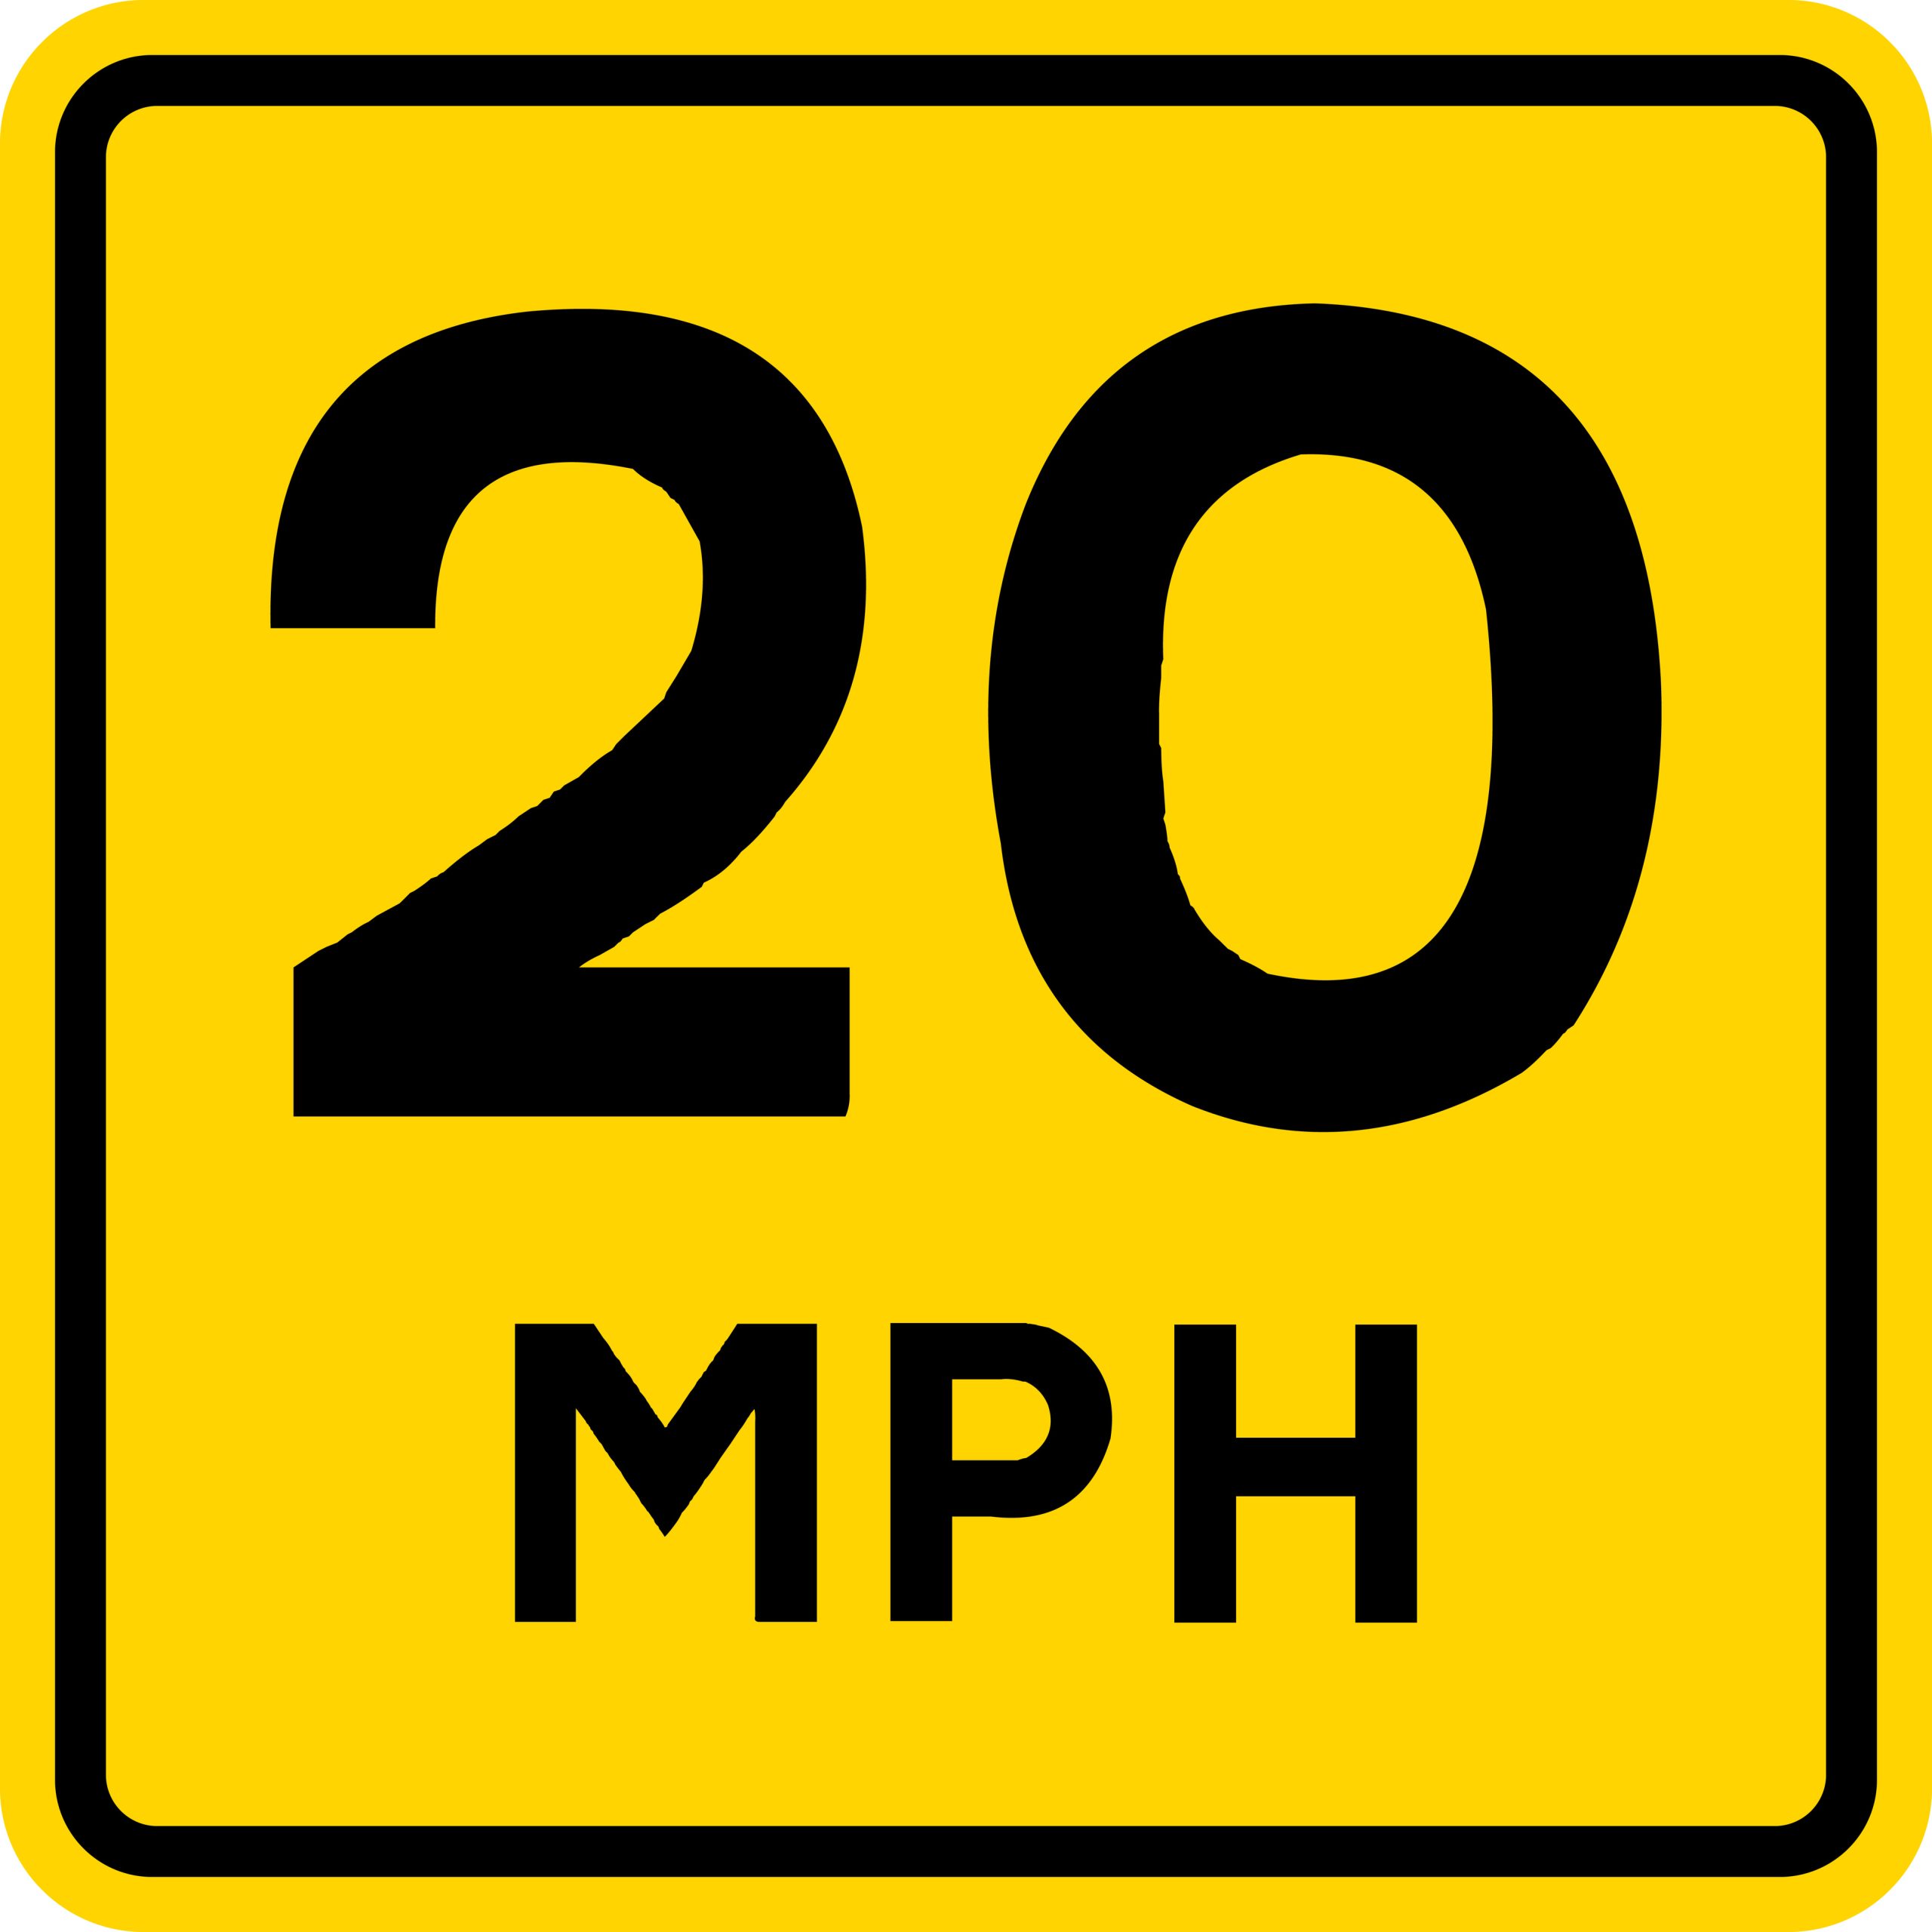 20 MPH Speed Limit